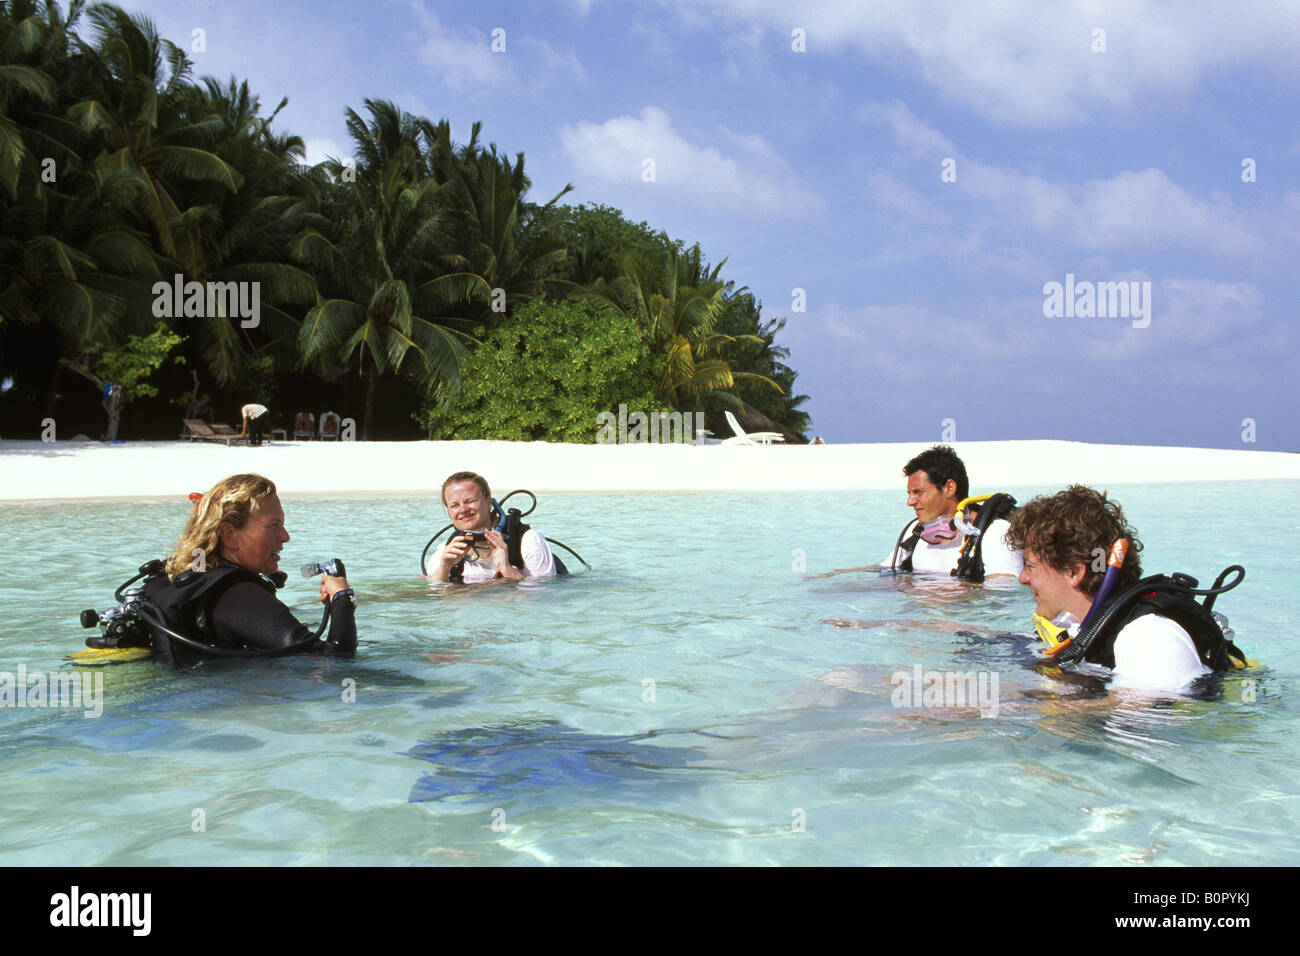 Stage de plongée Banque de photographies et d'images à haute résolution -  Alamy